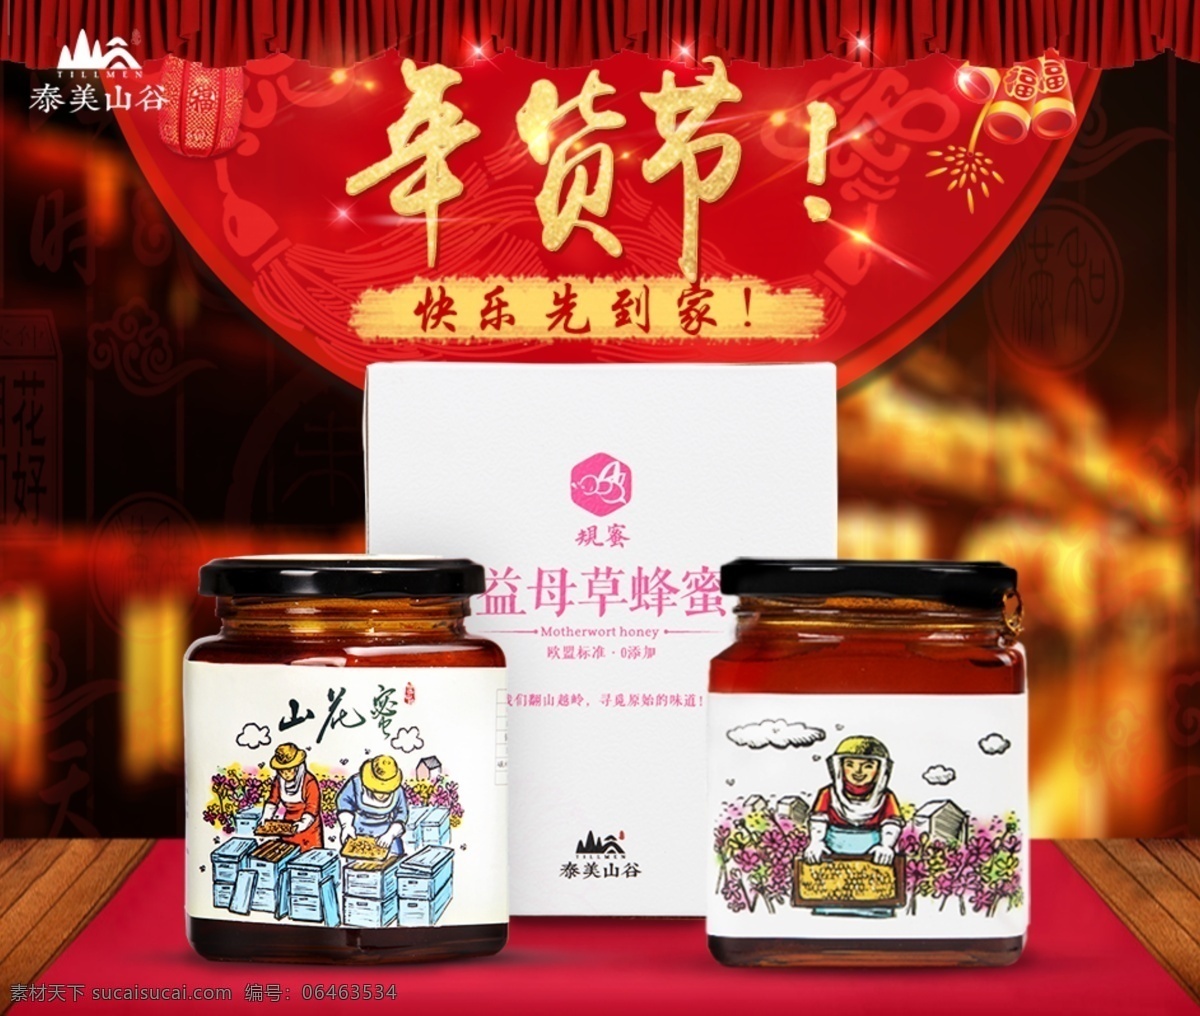 蜂蜜组合 年货节主题字 春节气氛背景 蜂蜜海报 食品海报